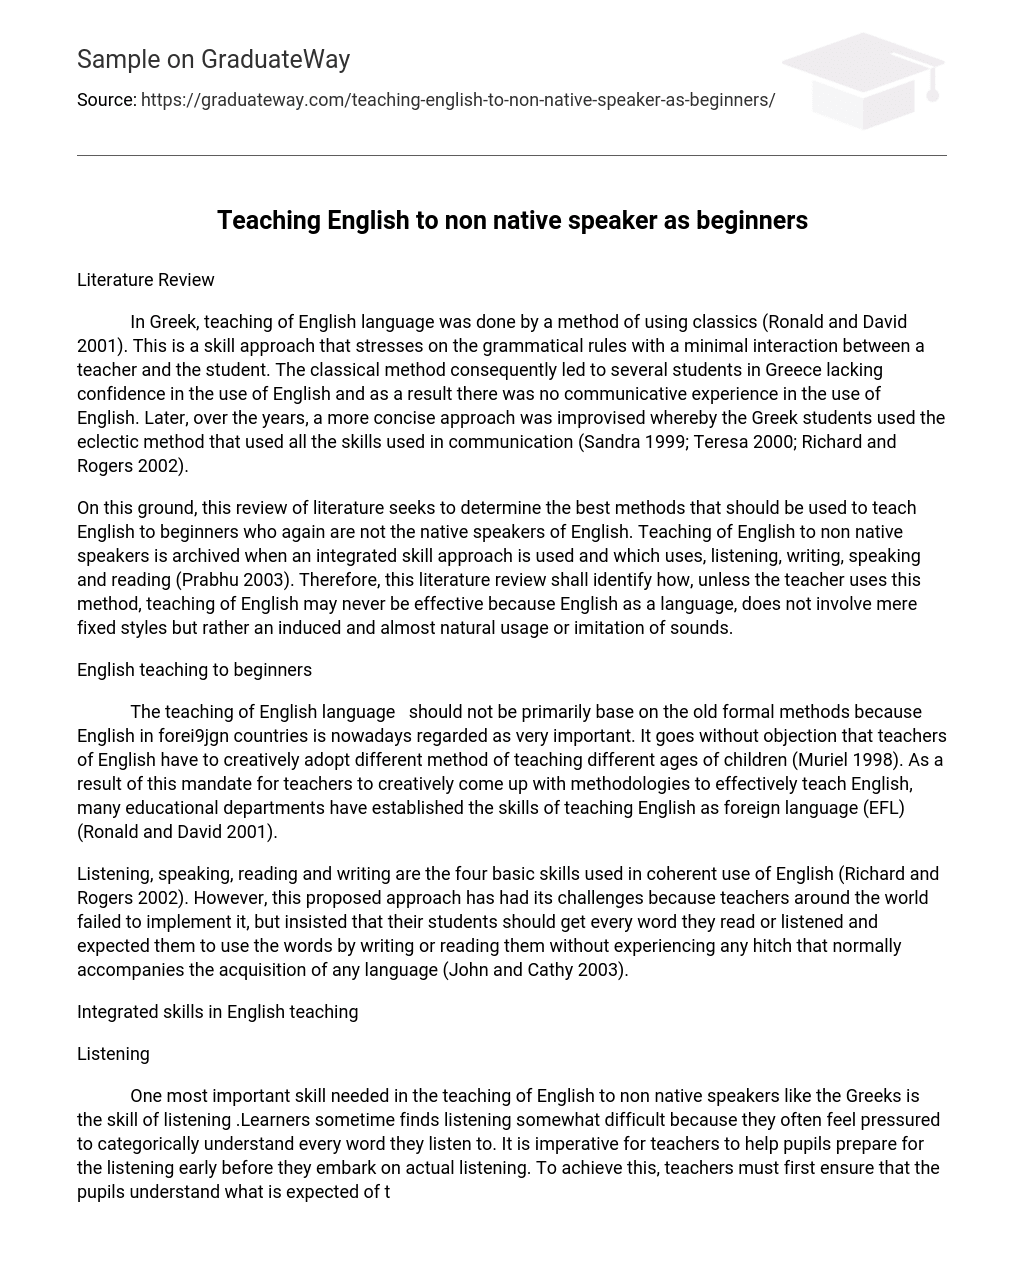 english essay on speaker